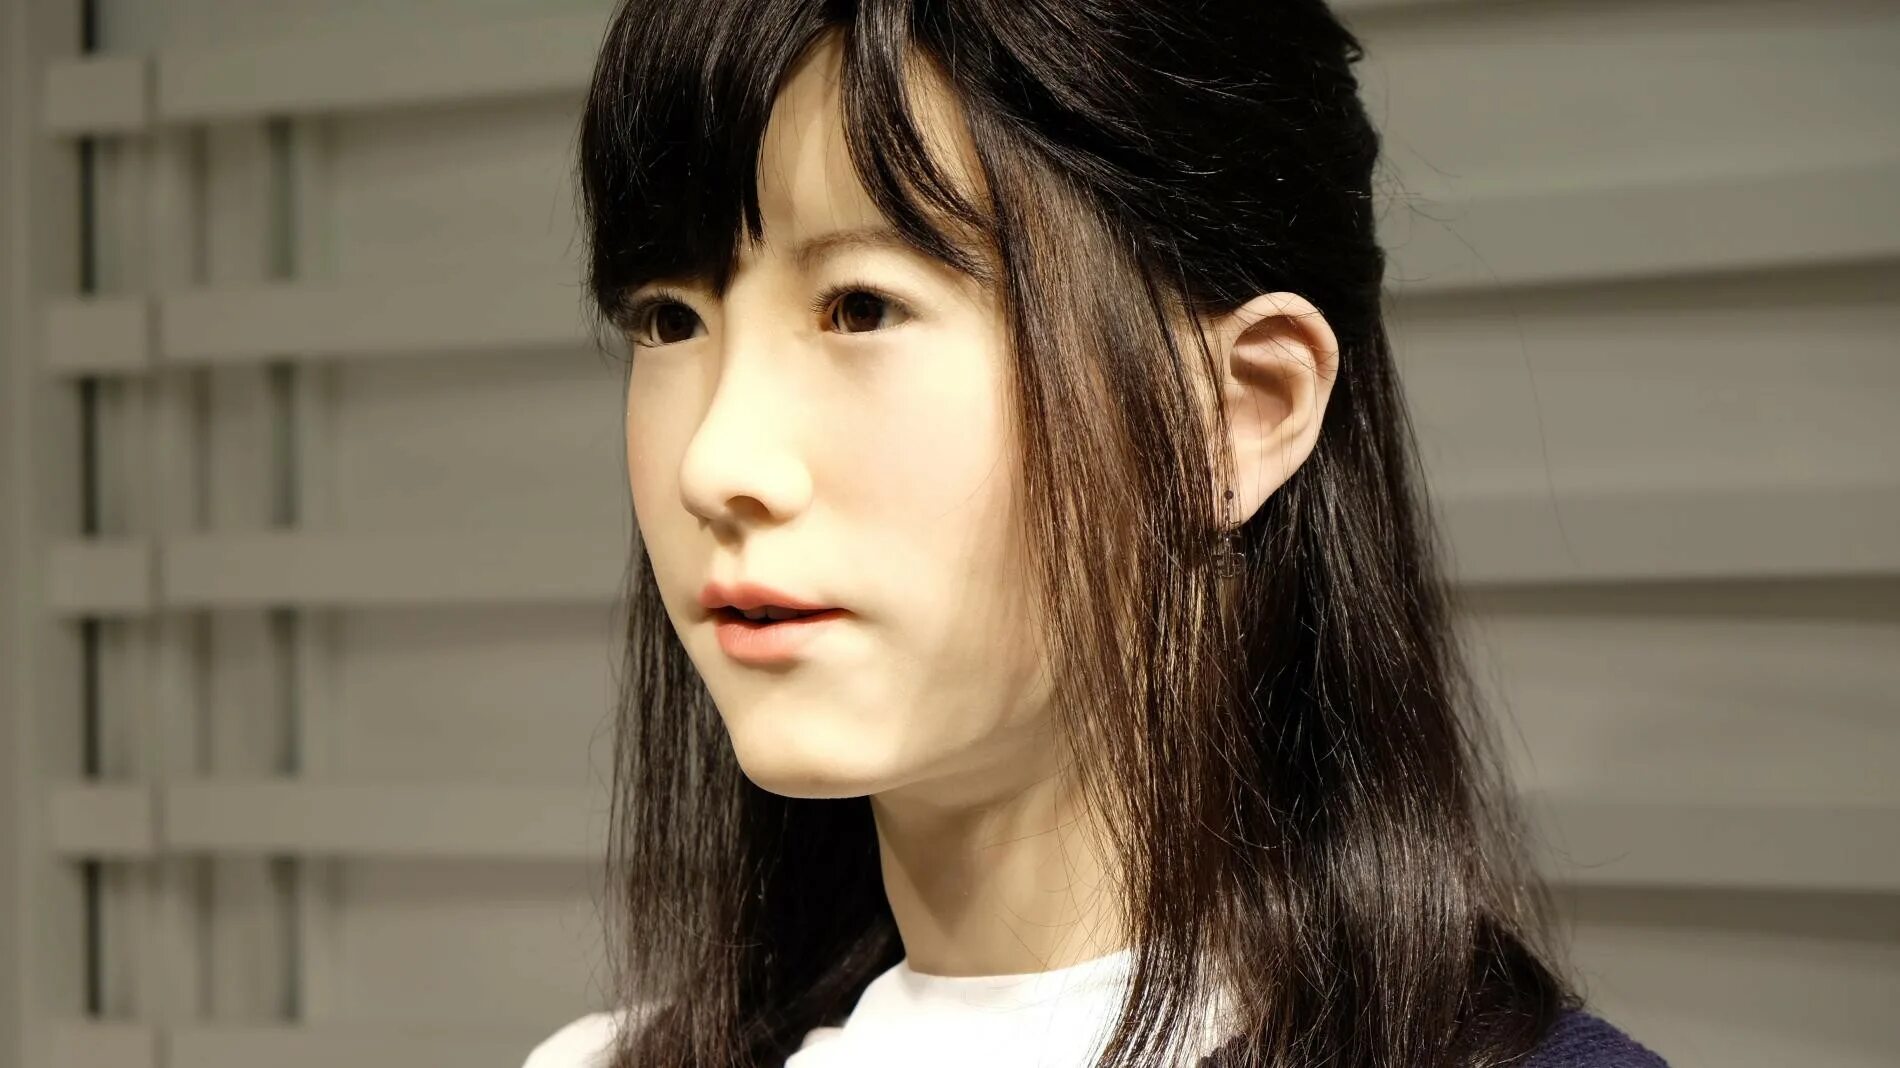 Андроиды в реальной жизни. Джунко Чихира робот. Японские человекоподобные роботы. Японские роботы похожие на людей. Андроиды похожие на людей.